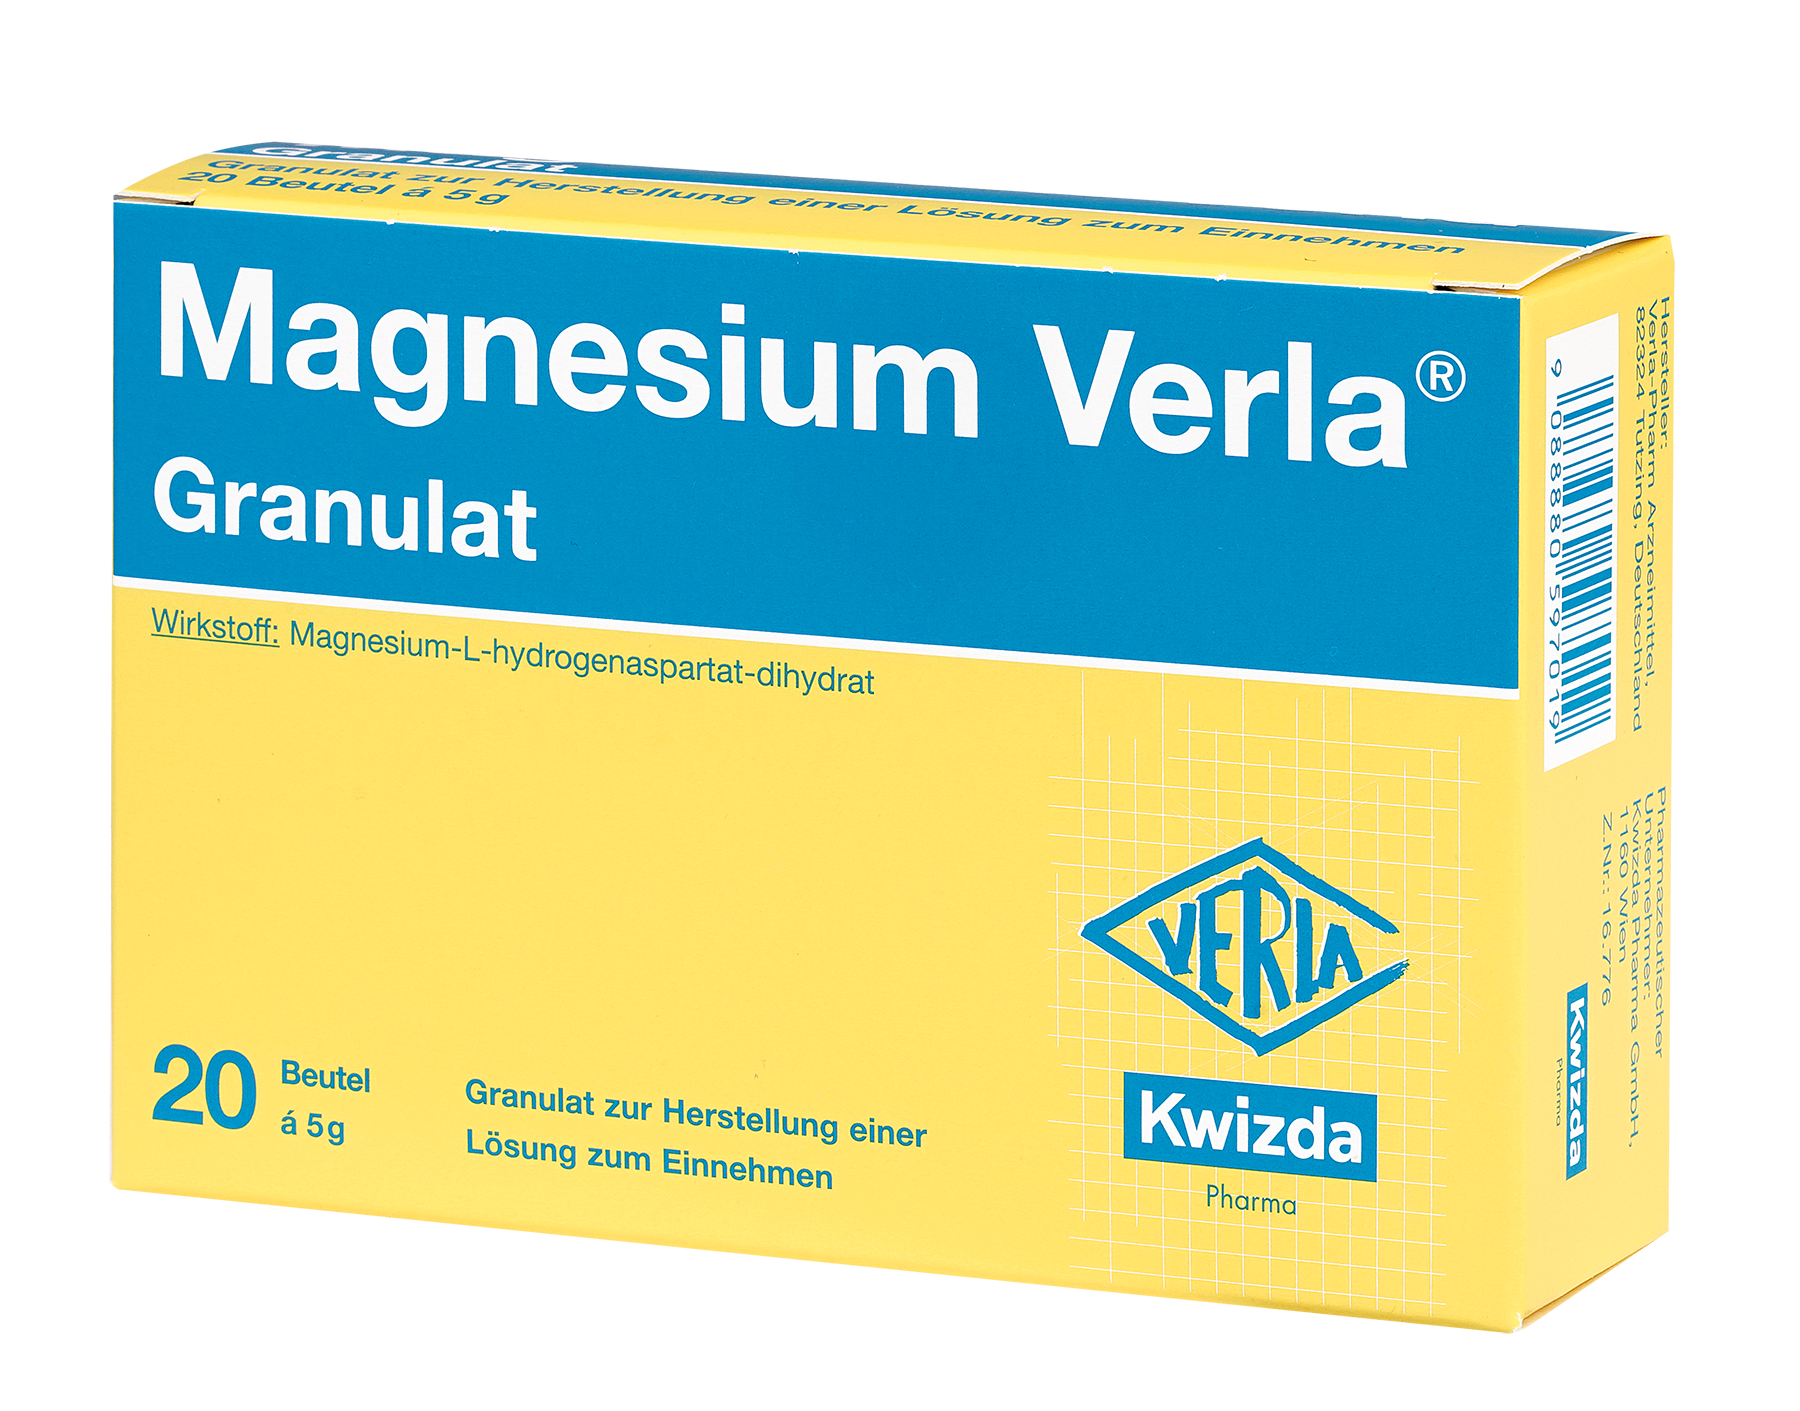 Magnesium Verla - Granulat